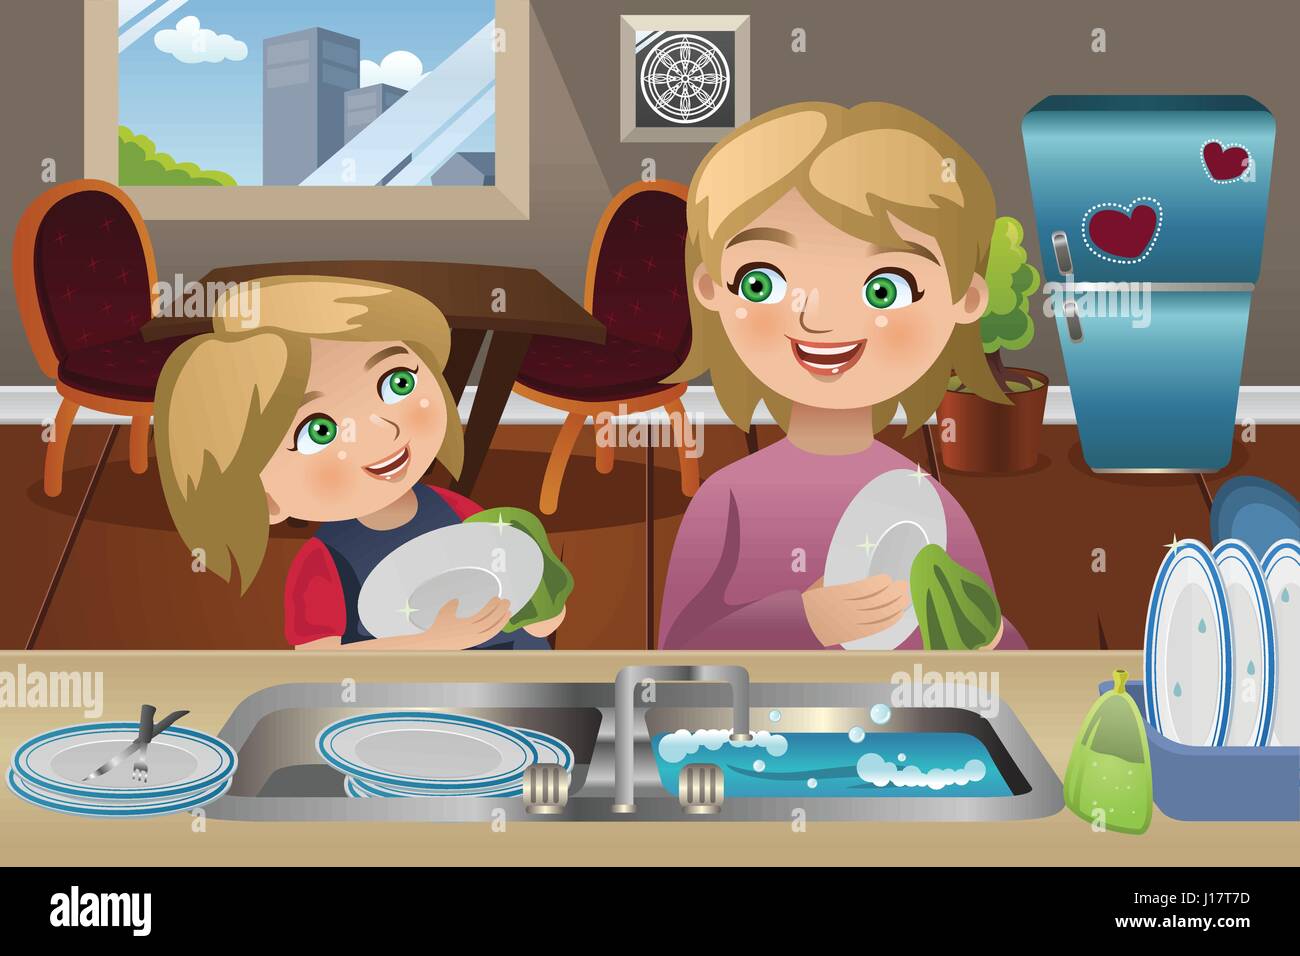 Дочка моет посуду. Мама моет посуду картинки для детей. Мама с дочкой моют посуду. Девочка с мамой моет посуду рисунок. Девочка моет посуду мультяшная.